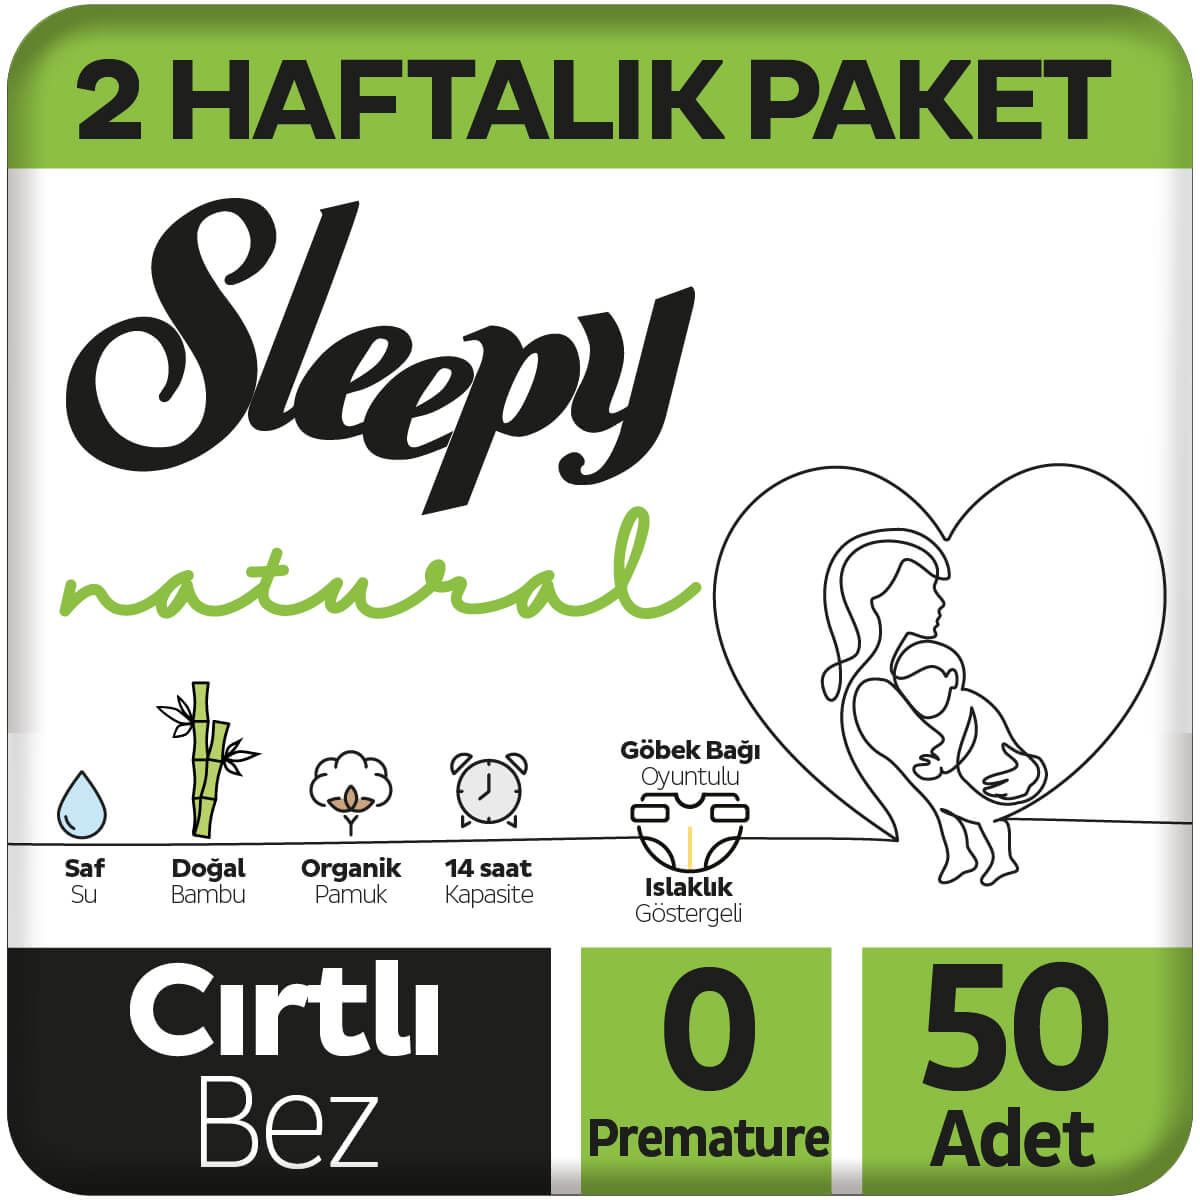 Sleepy Natural 2 Haftalık Paket Bebek Bezi 0 Numara Prematüre 50 Adet